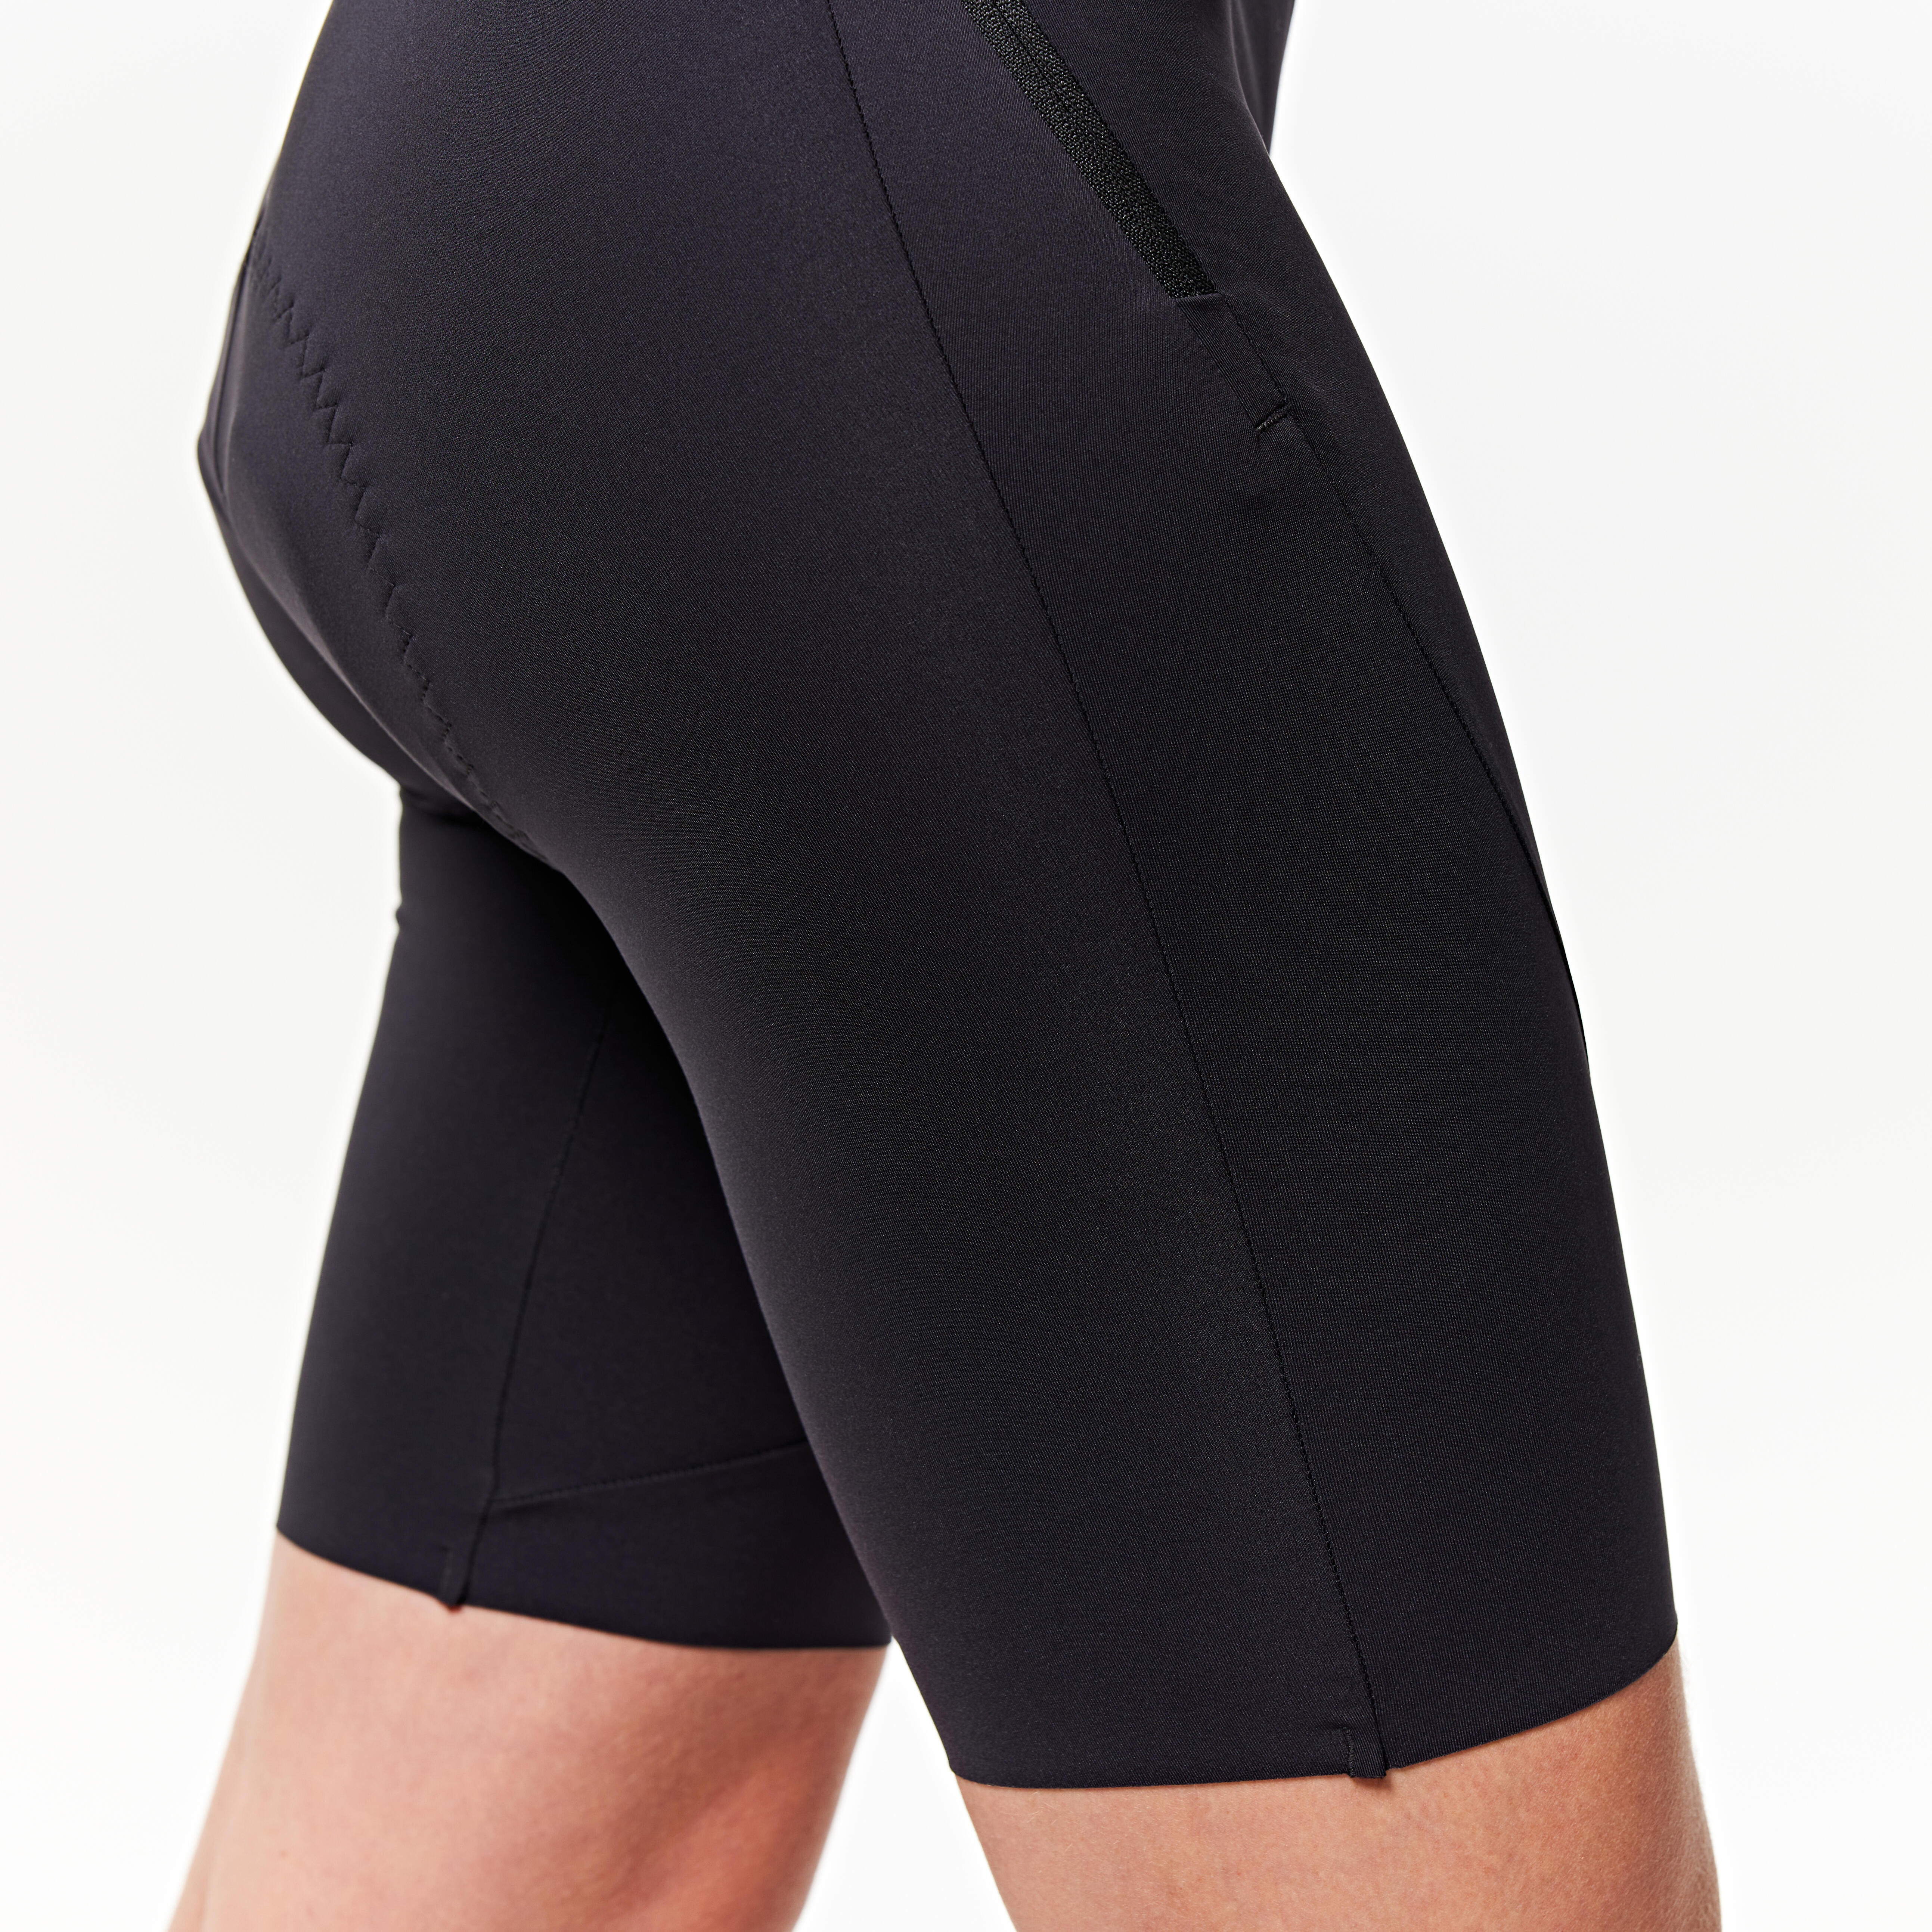 Women's Biking Bib Shorts - Black - VAN RYSEL